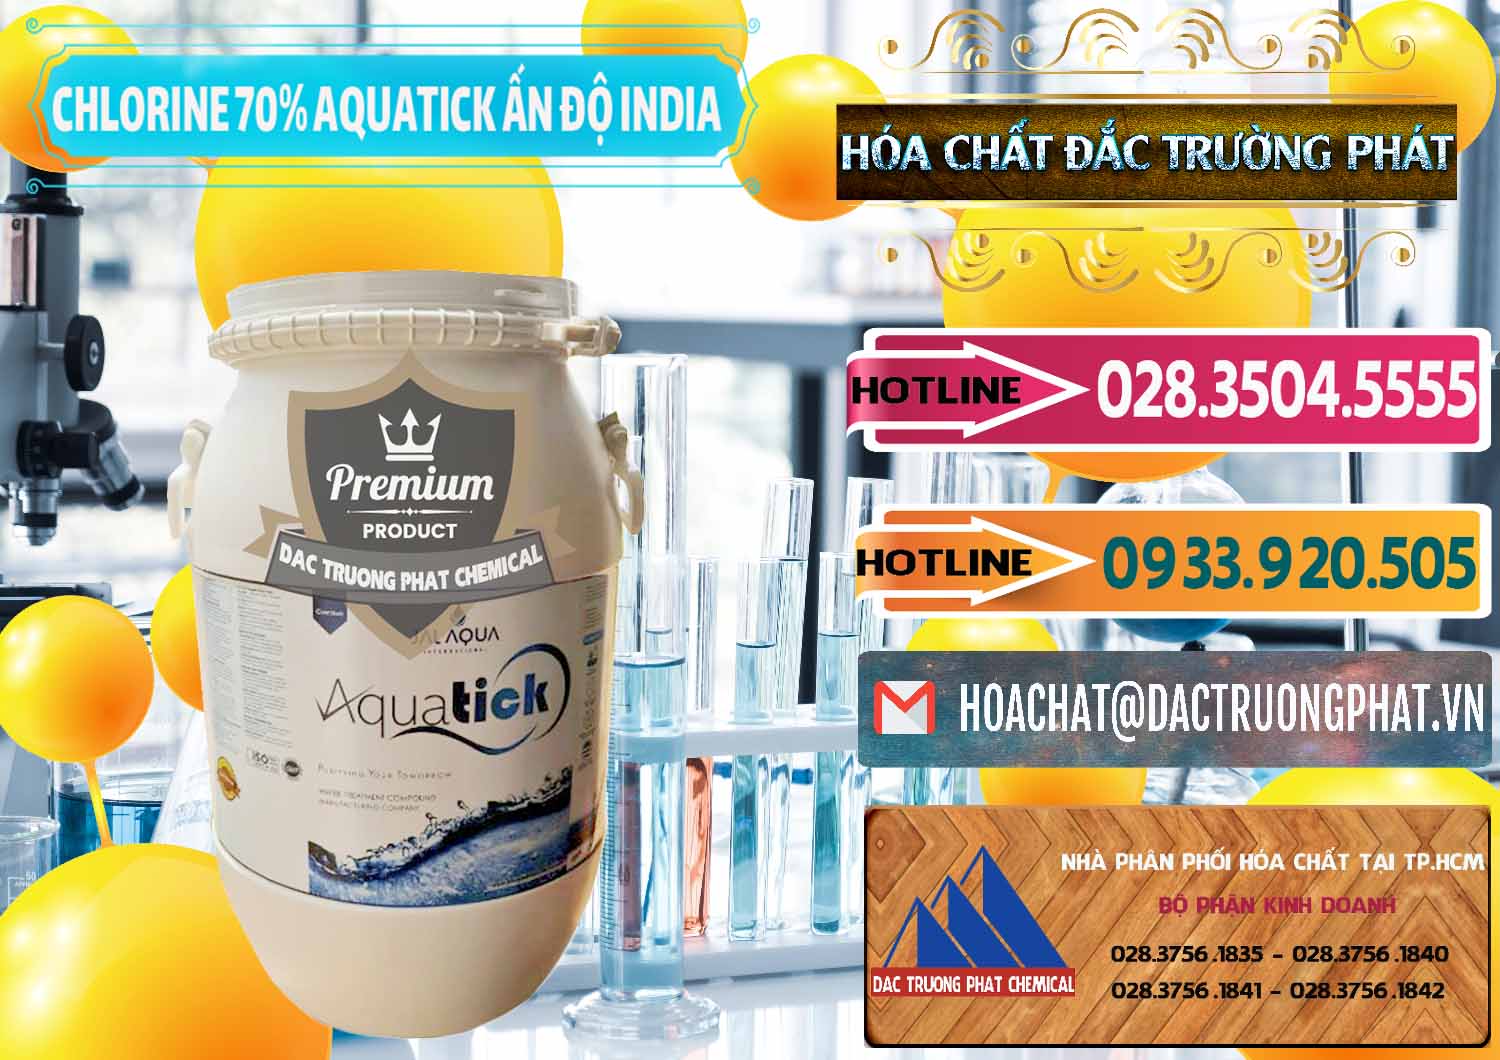 Chuyên cung cấp _ bán Chlorine – Clorin 70% Aquatick Jal Aqua Ấn Độ India - 0215 - Nhà phân phối ( cung ứng ) hóa chất tại TP.HCM - dactruongphat.vn